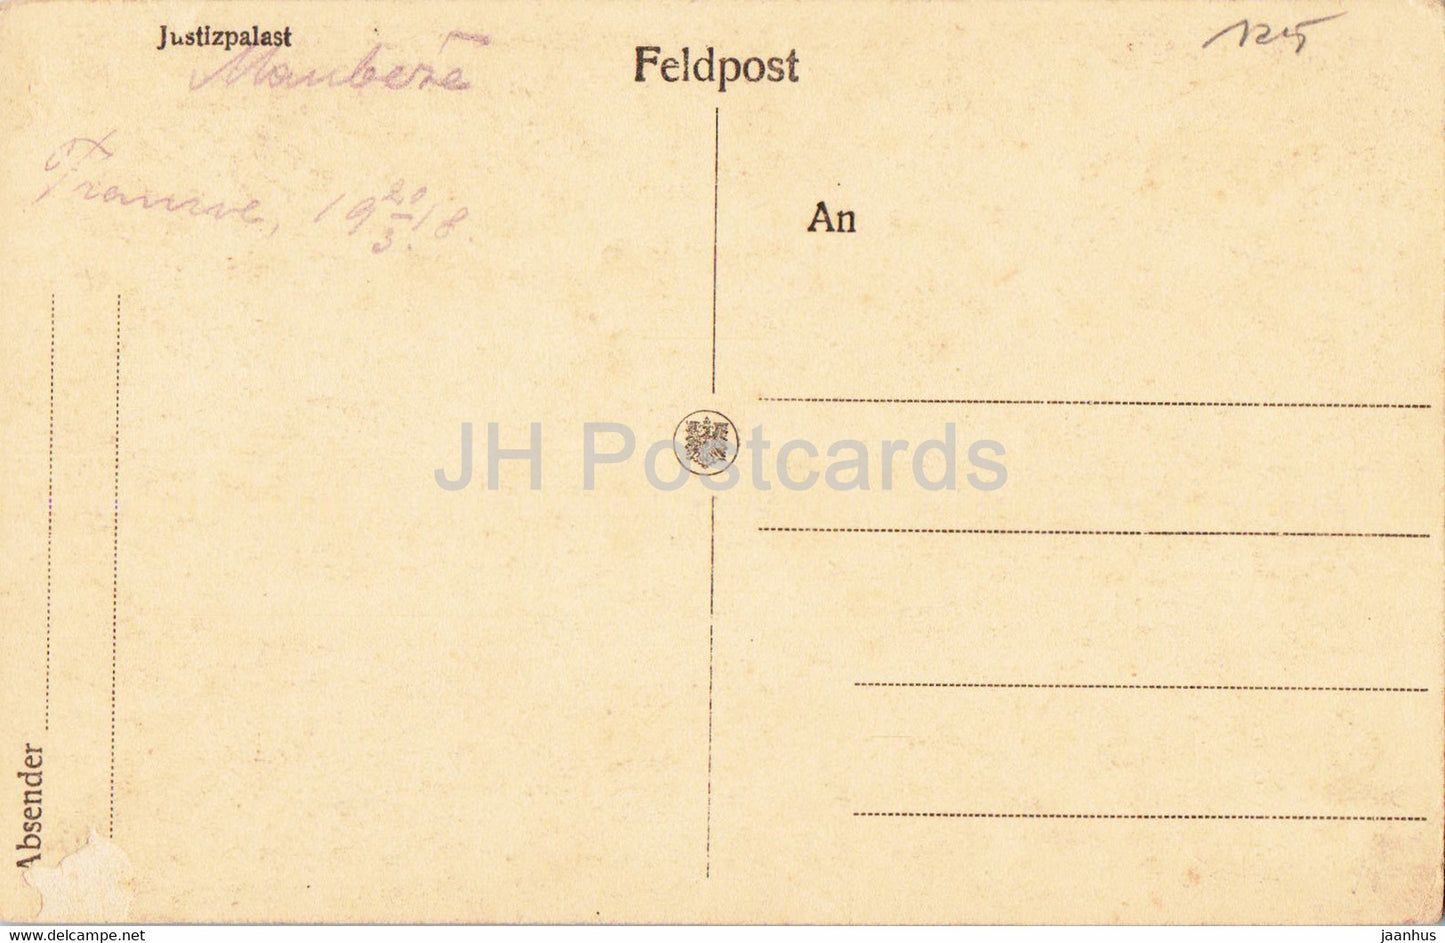 Laon - Justizpalast - Feldpostkarte - courrier militaire - carte postale ancienne - France - inutilisé